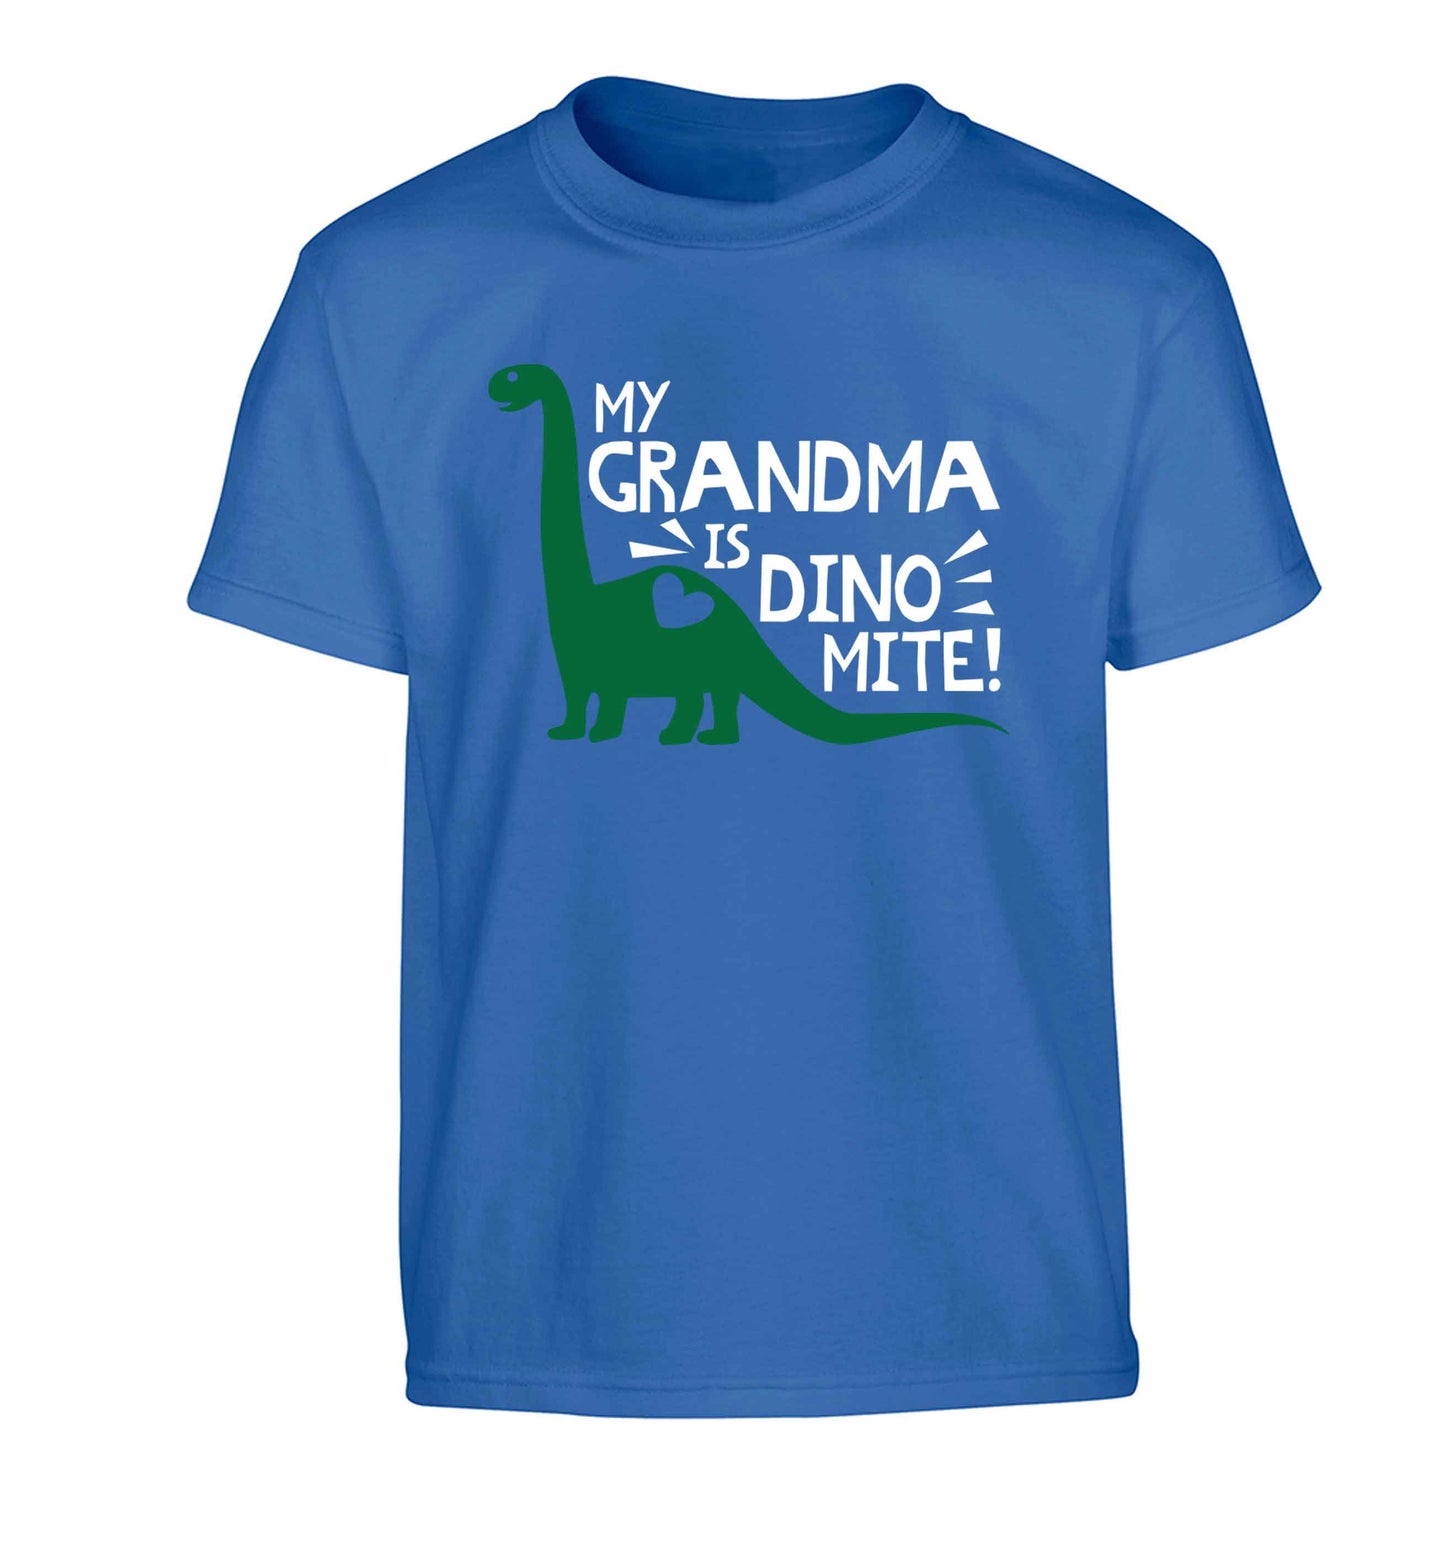 My grandma is dinomite! Children's blue Tshirt 12-13 Years